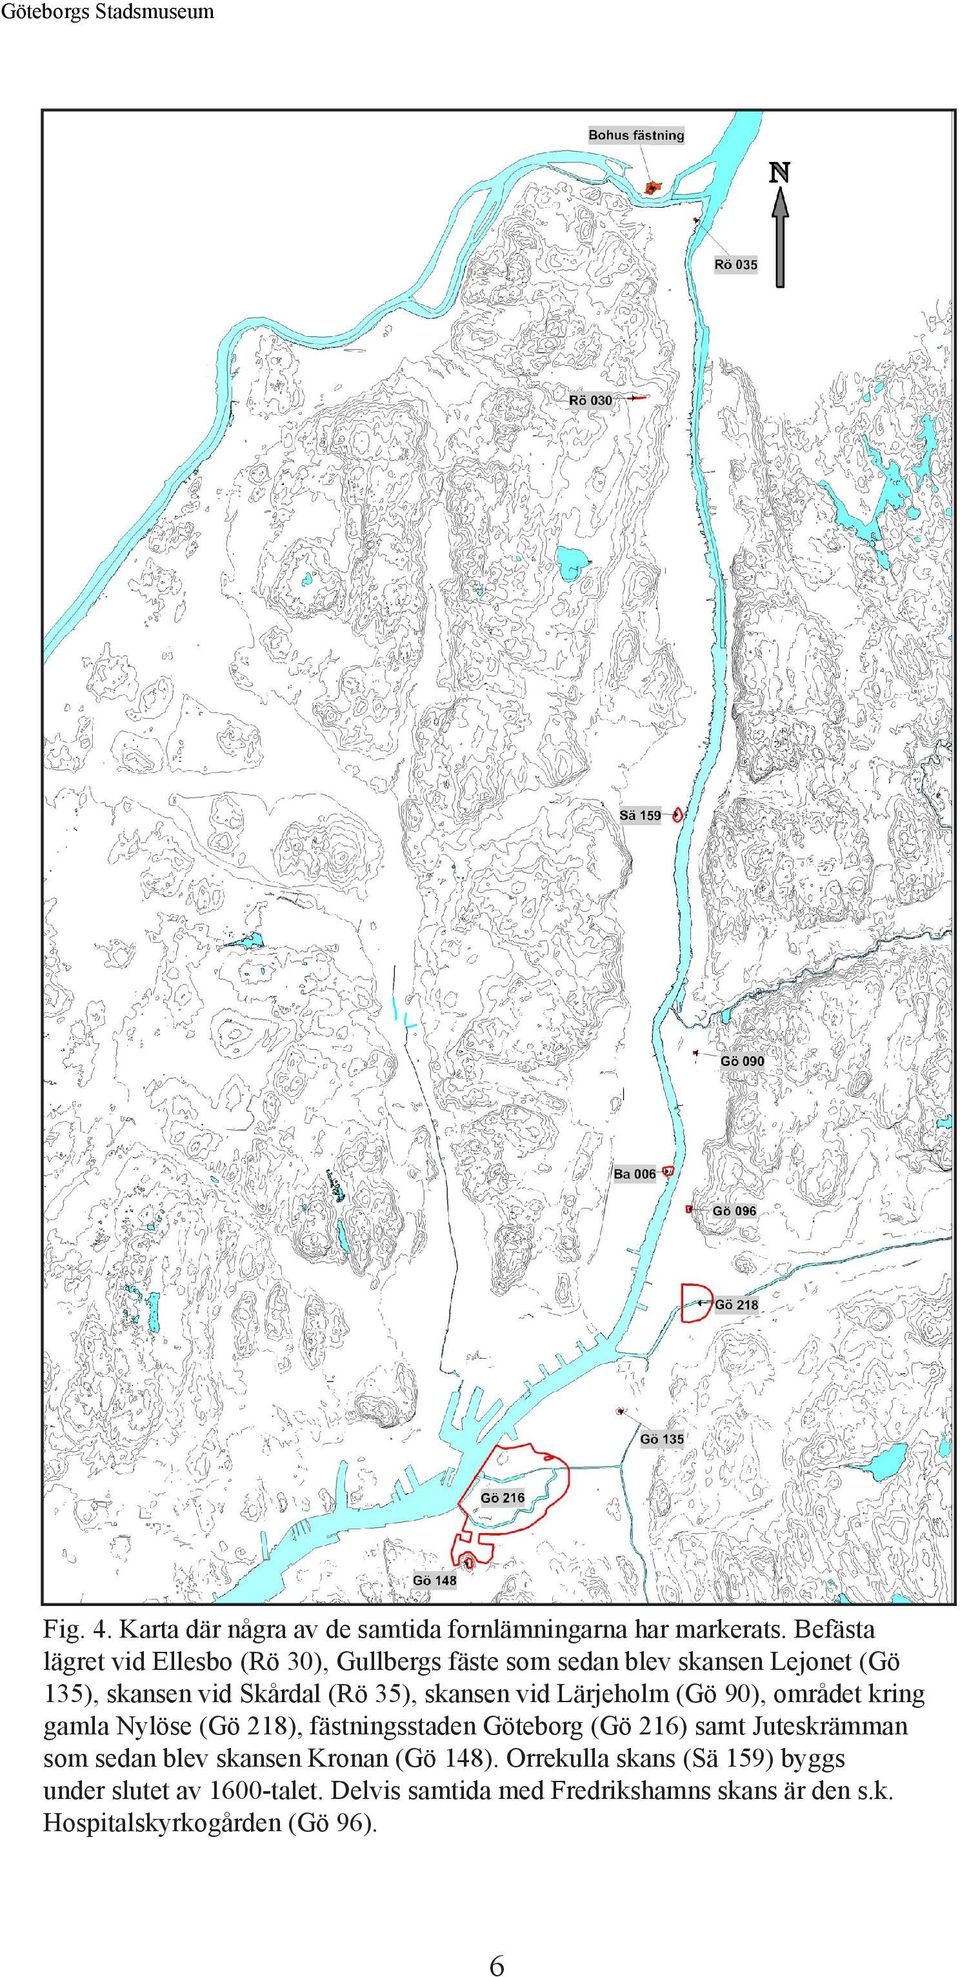 skansen vid Lärjeholm (Gö 90), området kring gamla Nylöse (Gö 218), fästningsstaden Göteborg (Gö 216) samt Juteskrämman som